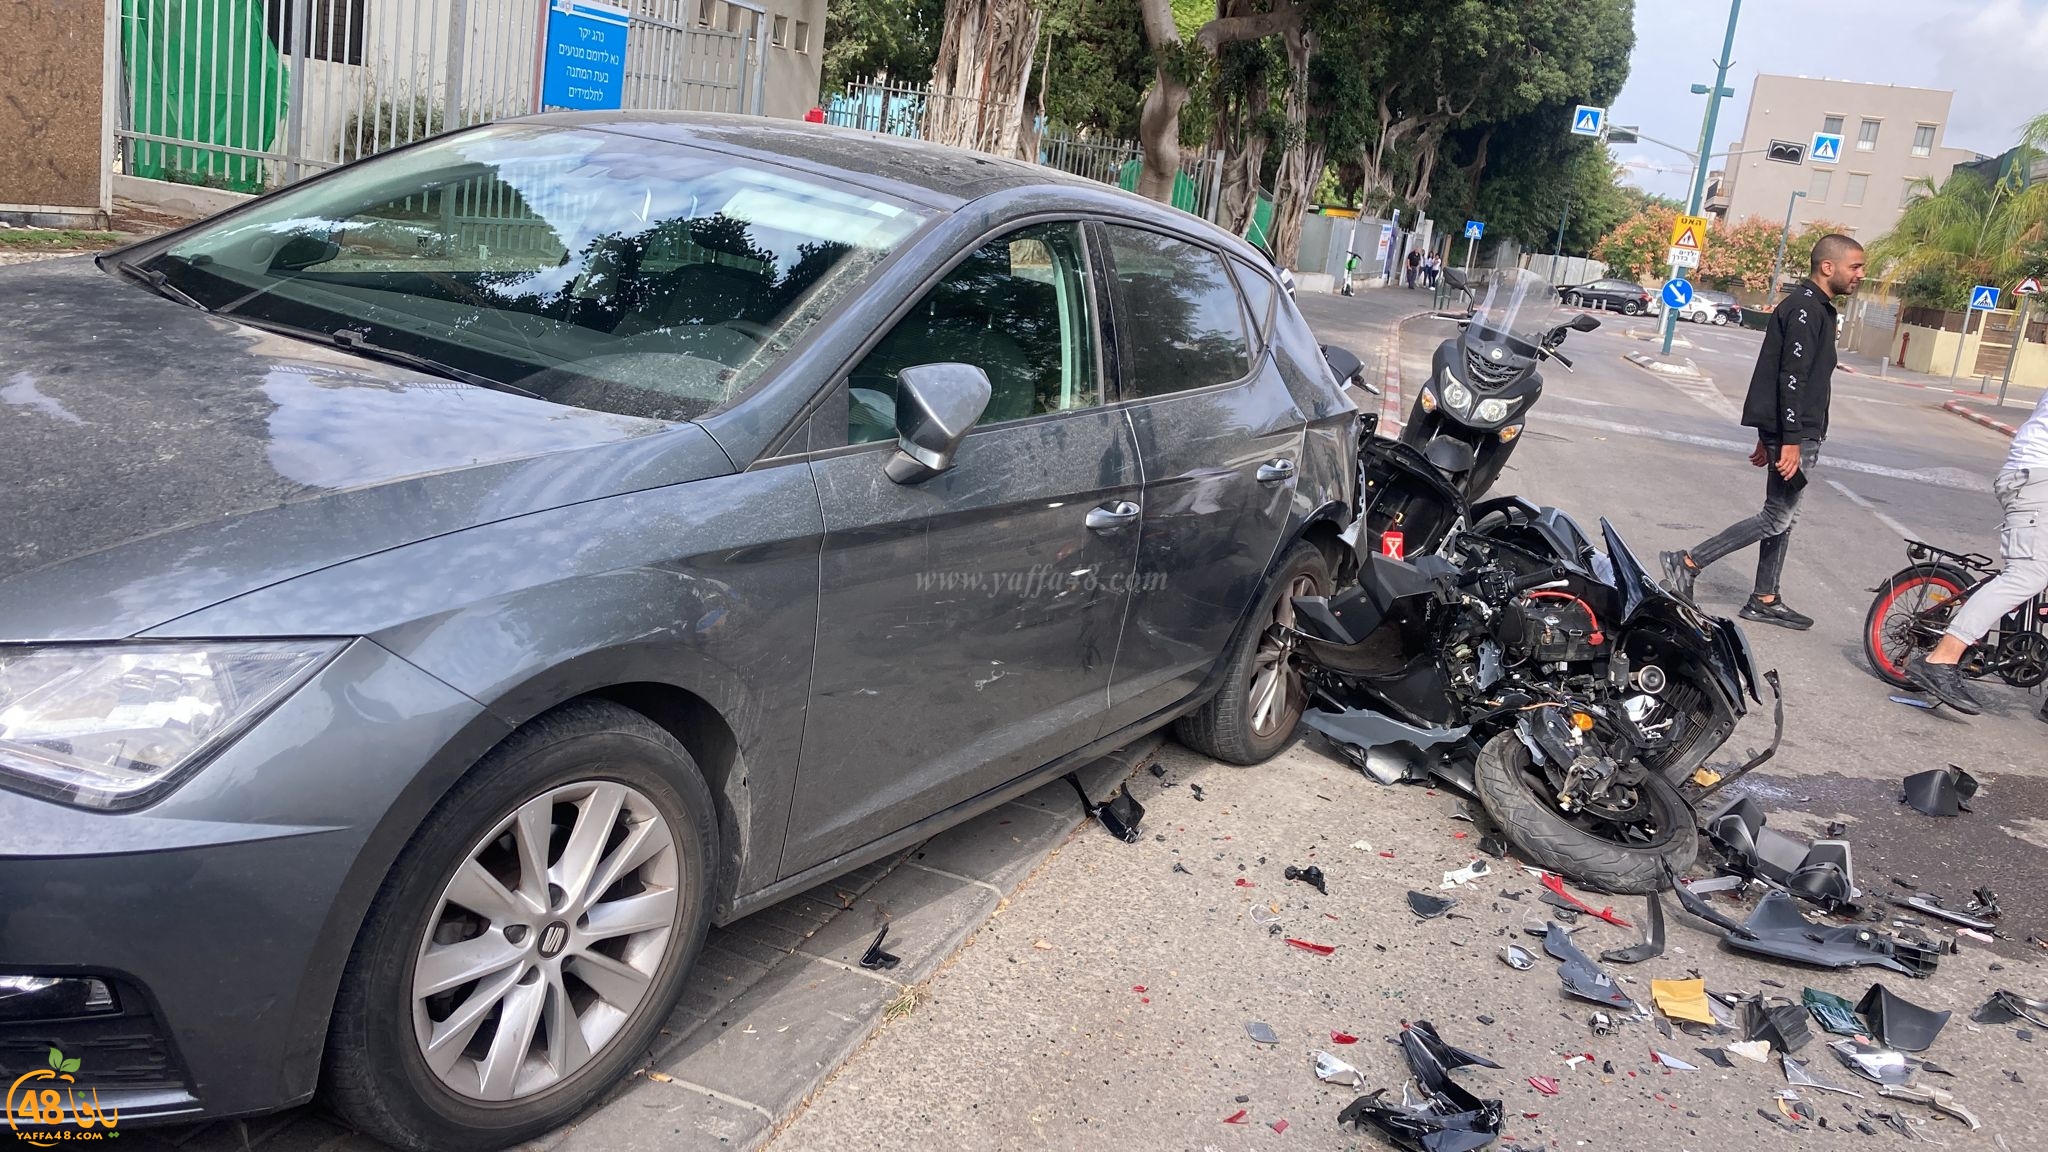  يافا: اصابة متوسطة لشابين بحادث طرق ذاتي 